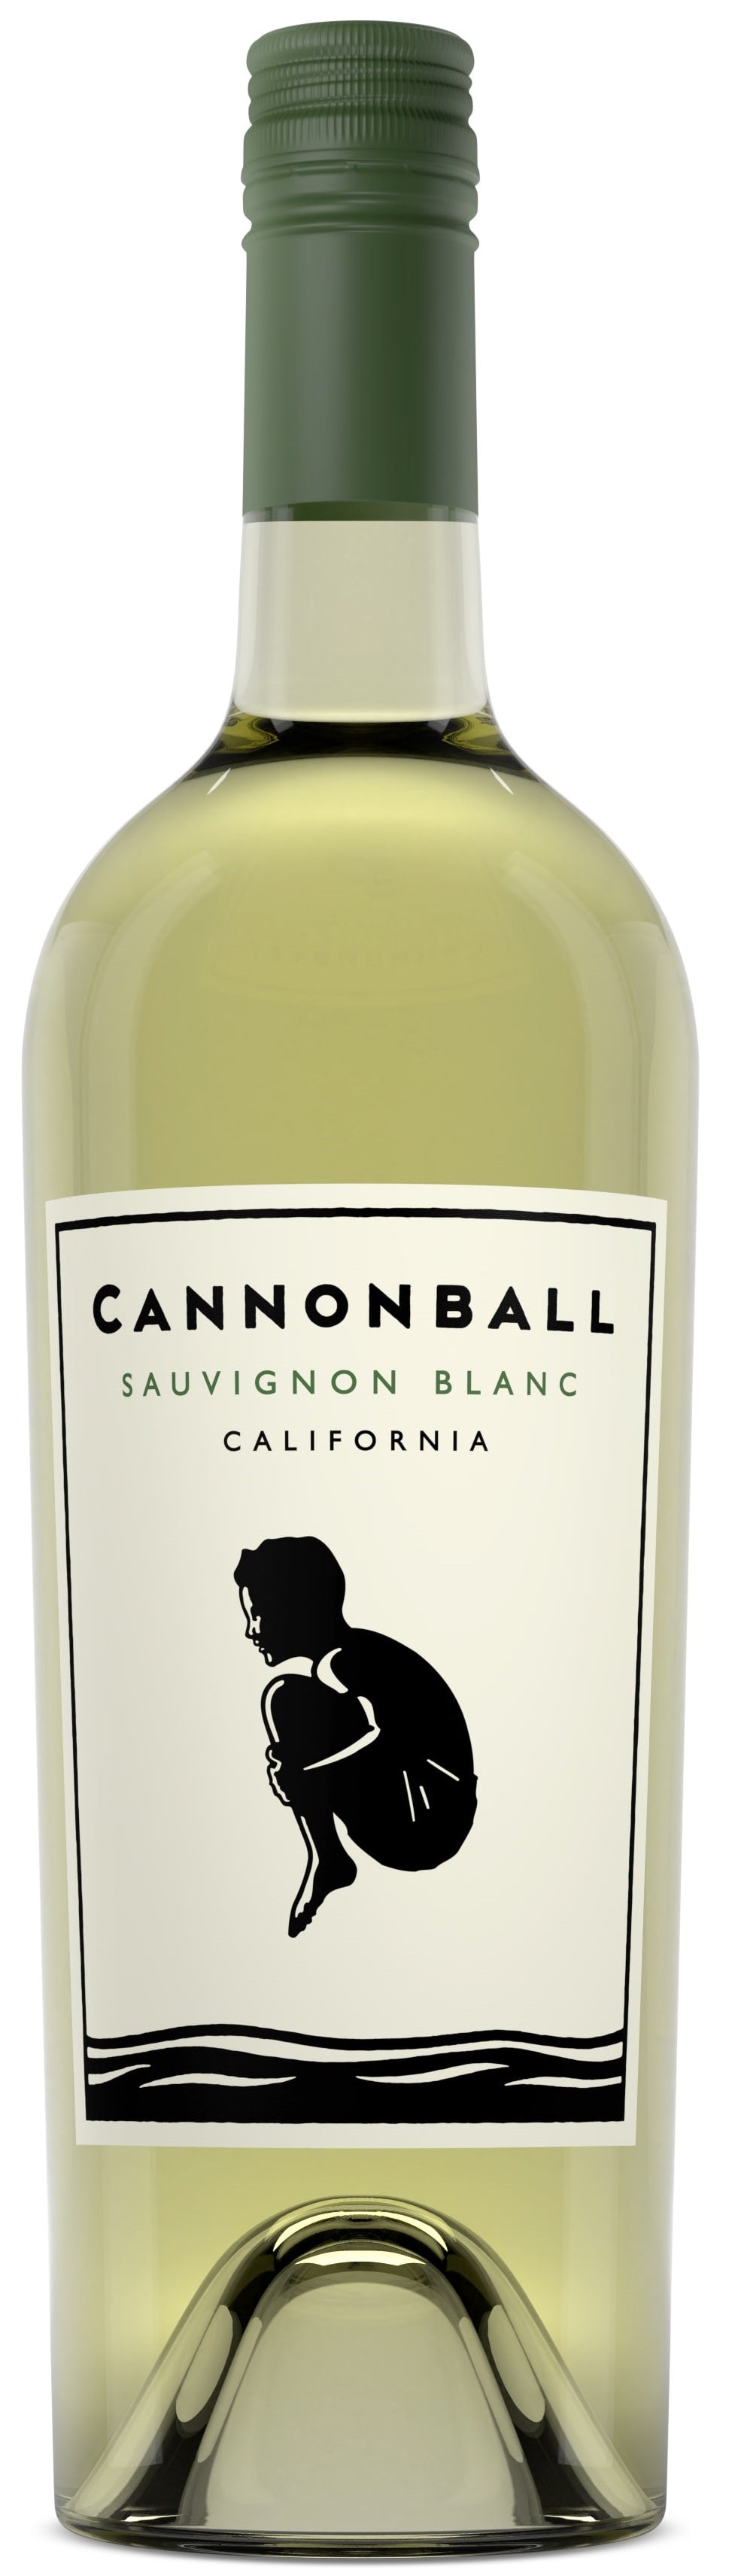 Cannonball Sauvignon Blanc 2019